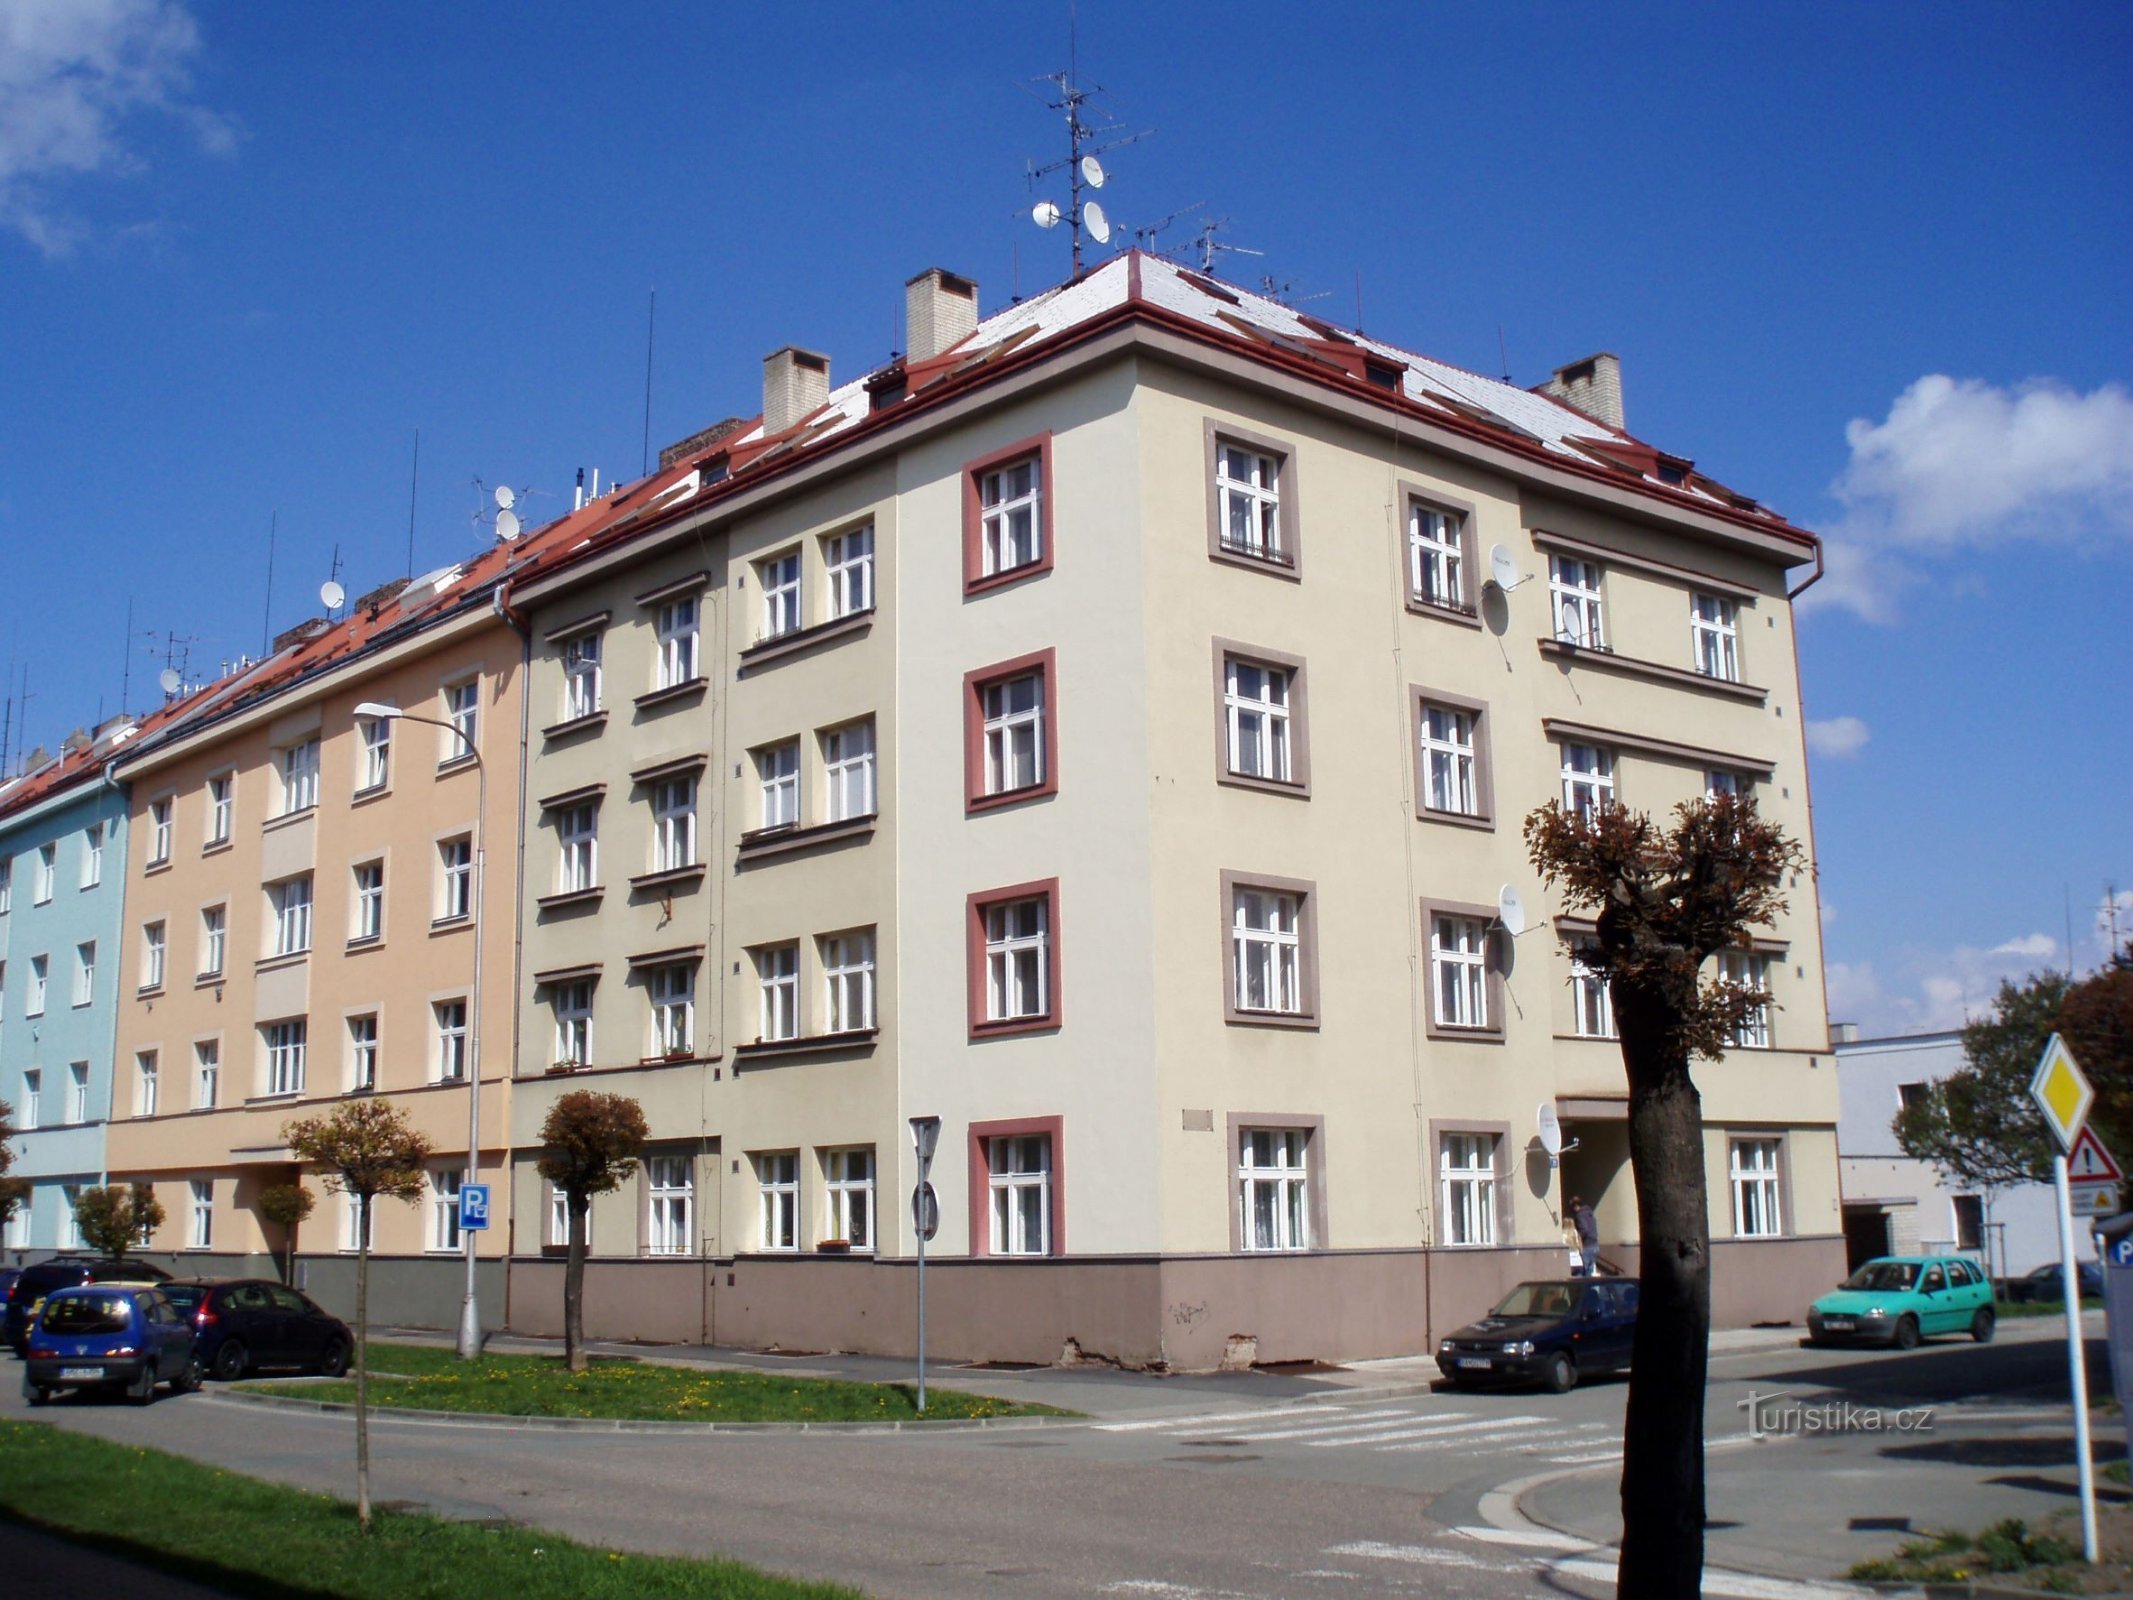 Albertova số 826 (Hradec Králové, ngày 21.4.2012 tháng XNUMX năm XNUMX)